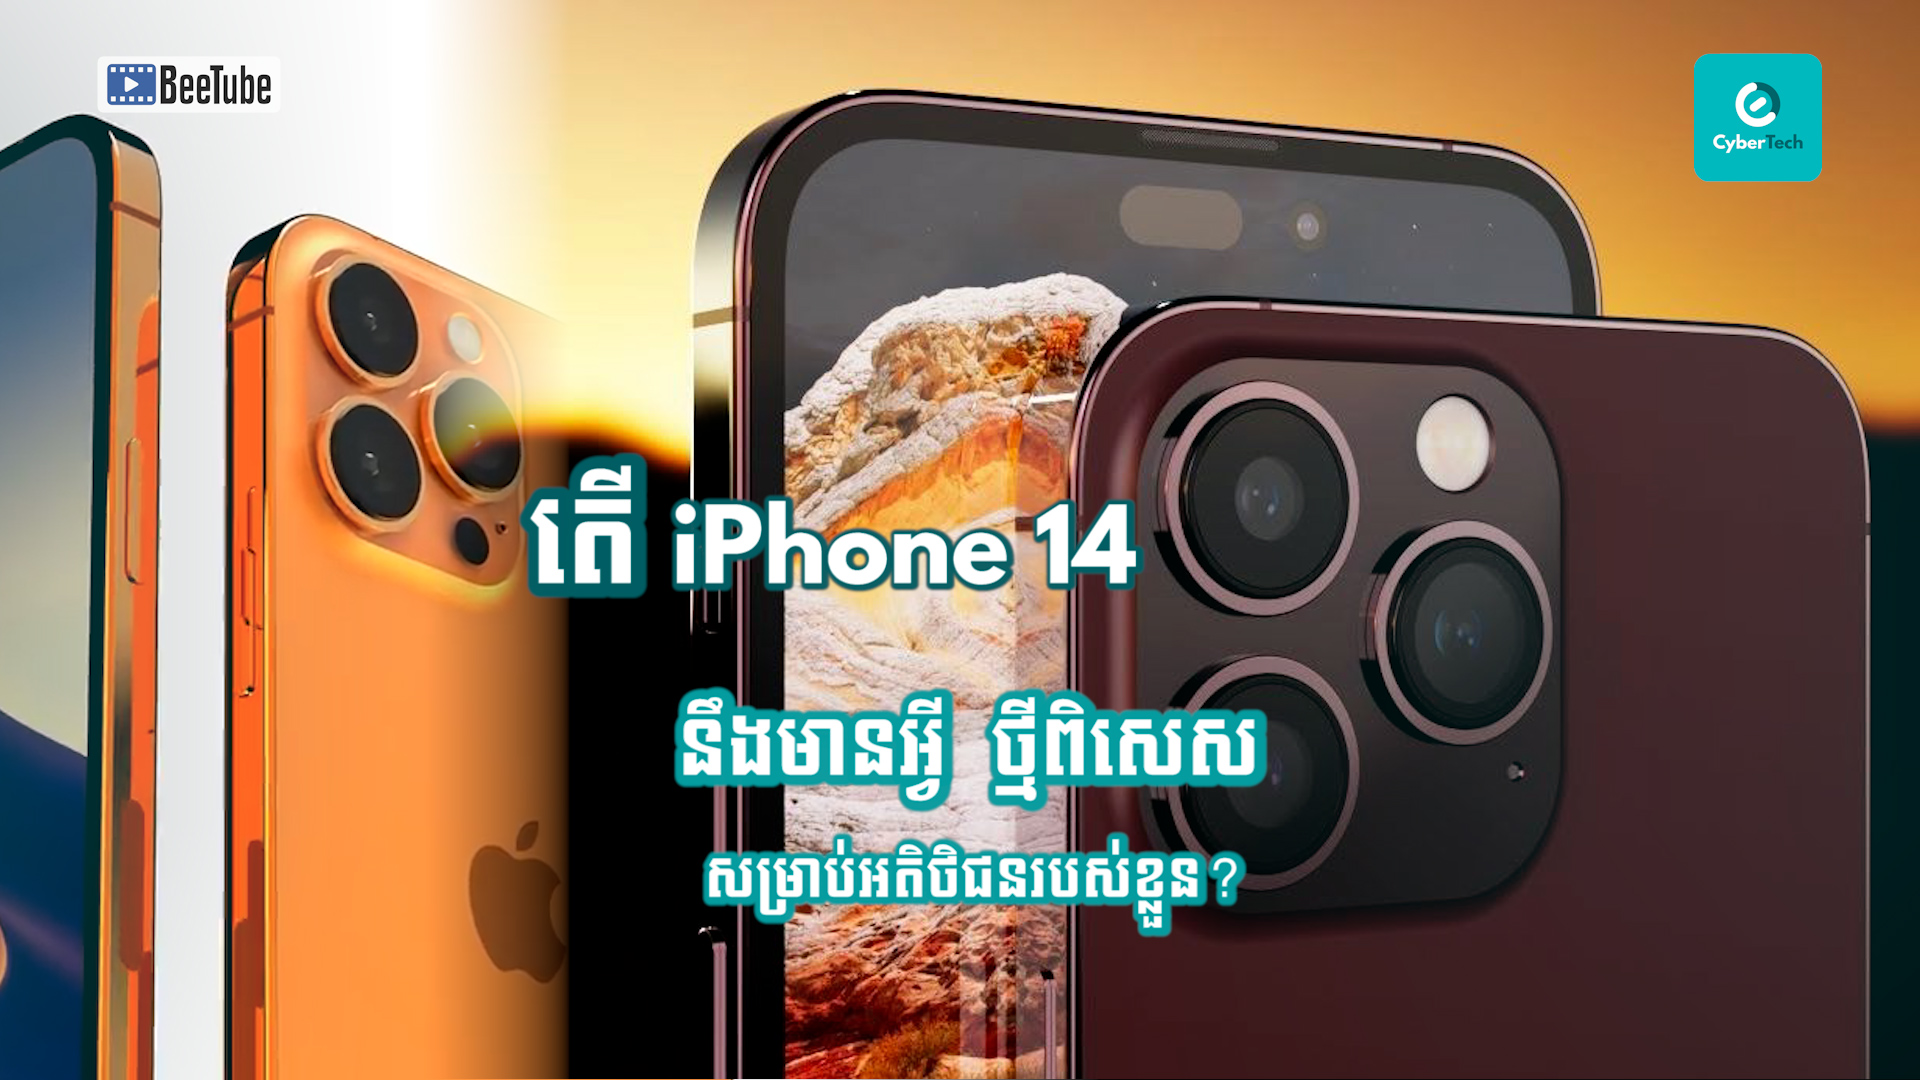 តើ iPhone 14 នឹងមានអ្វីថ្មីពិសេសសម្រាប់អតិថិជនរបស់ខ្លួន?